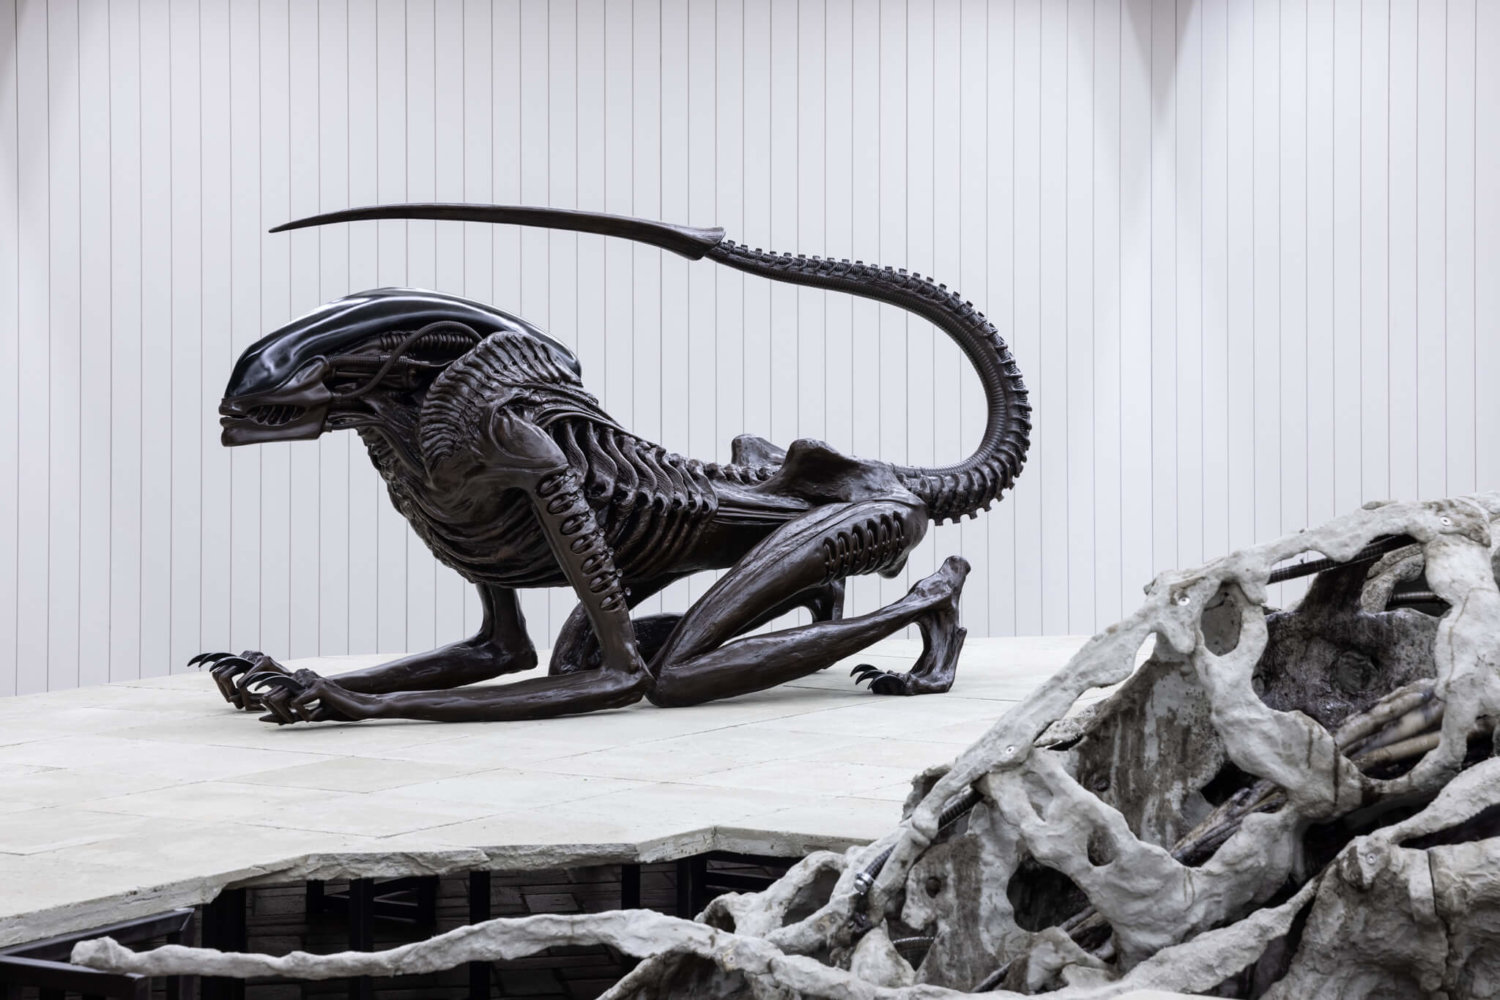 Auf einem Podest ruht die alienhafte Skulptur "Necronom" von HR Giger wie eine skeletthafte Katze.